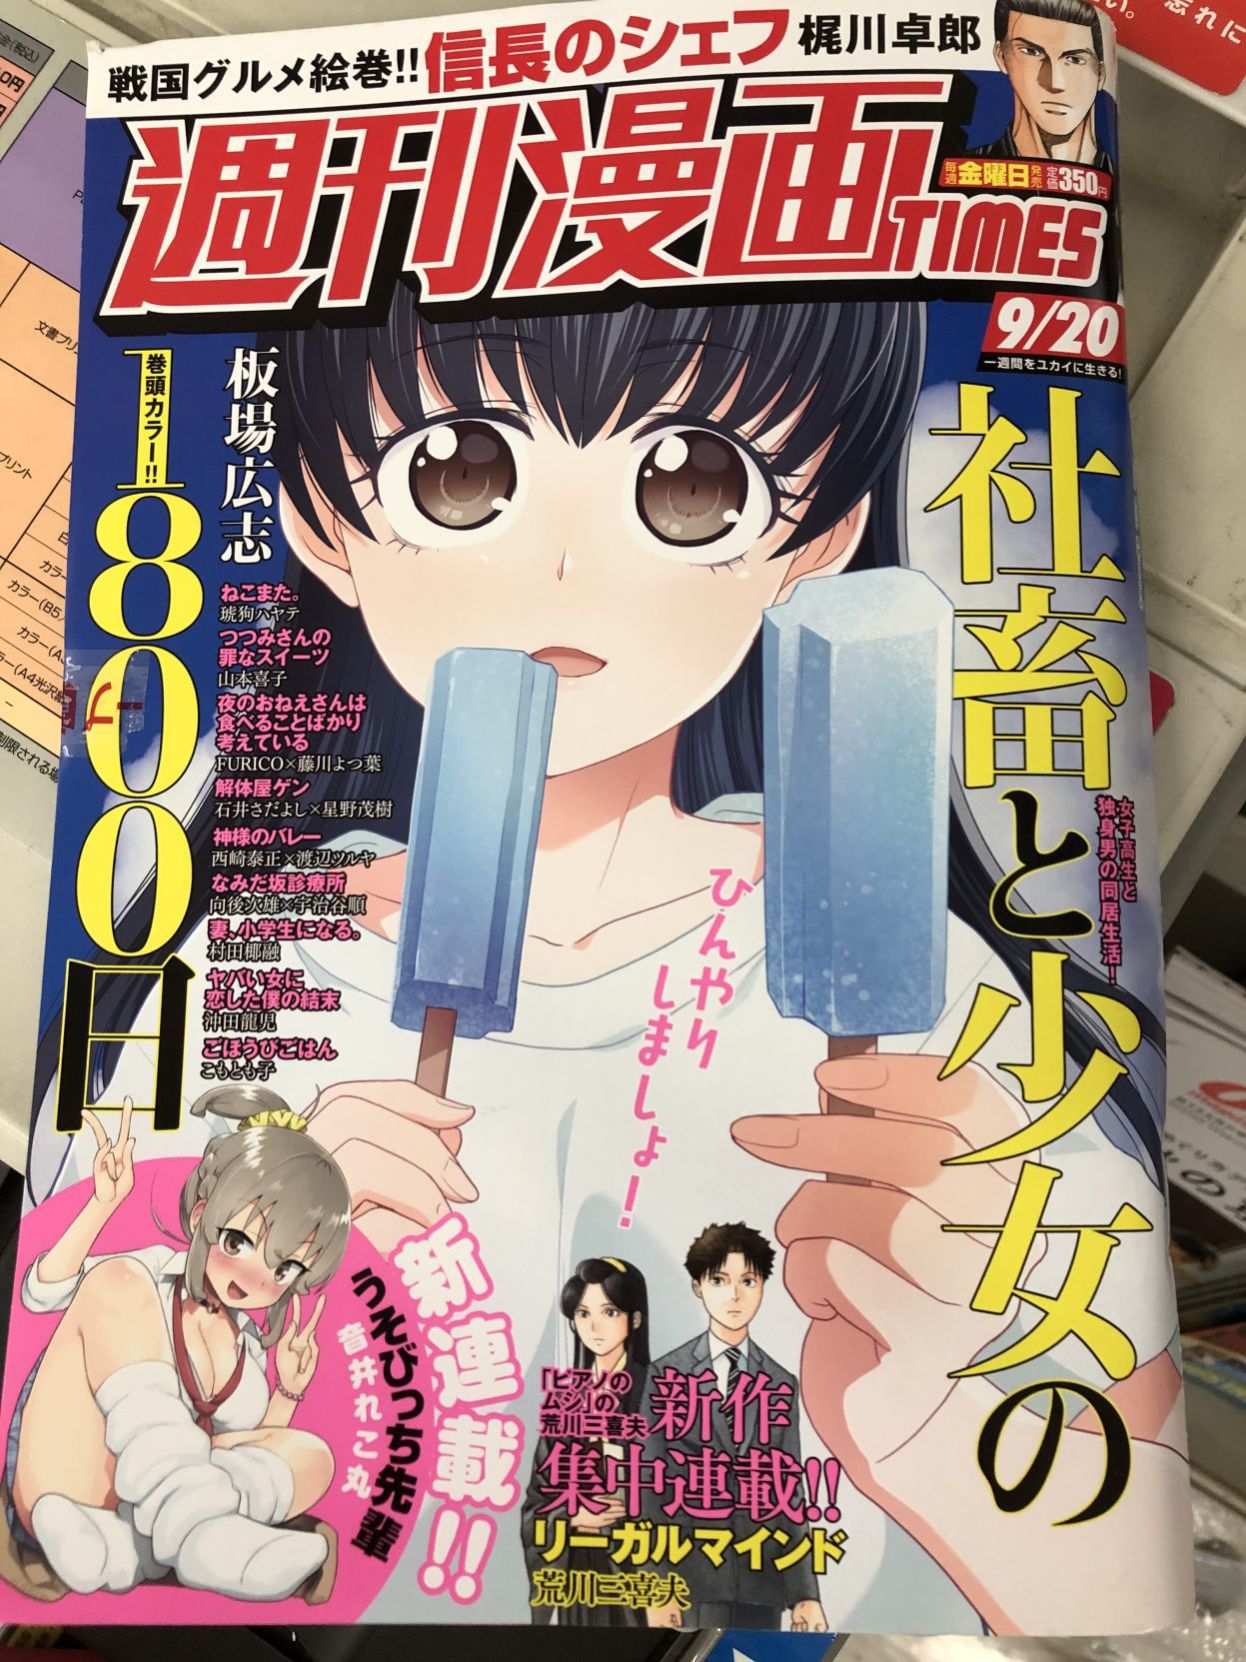 Anime Manga Magazine Cover | Aesthetic Anime Collages | Photo Aesthetic  Manga - 50pcs - Aliexpress